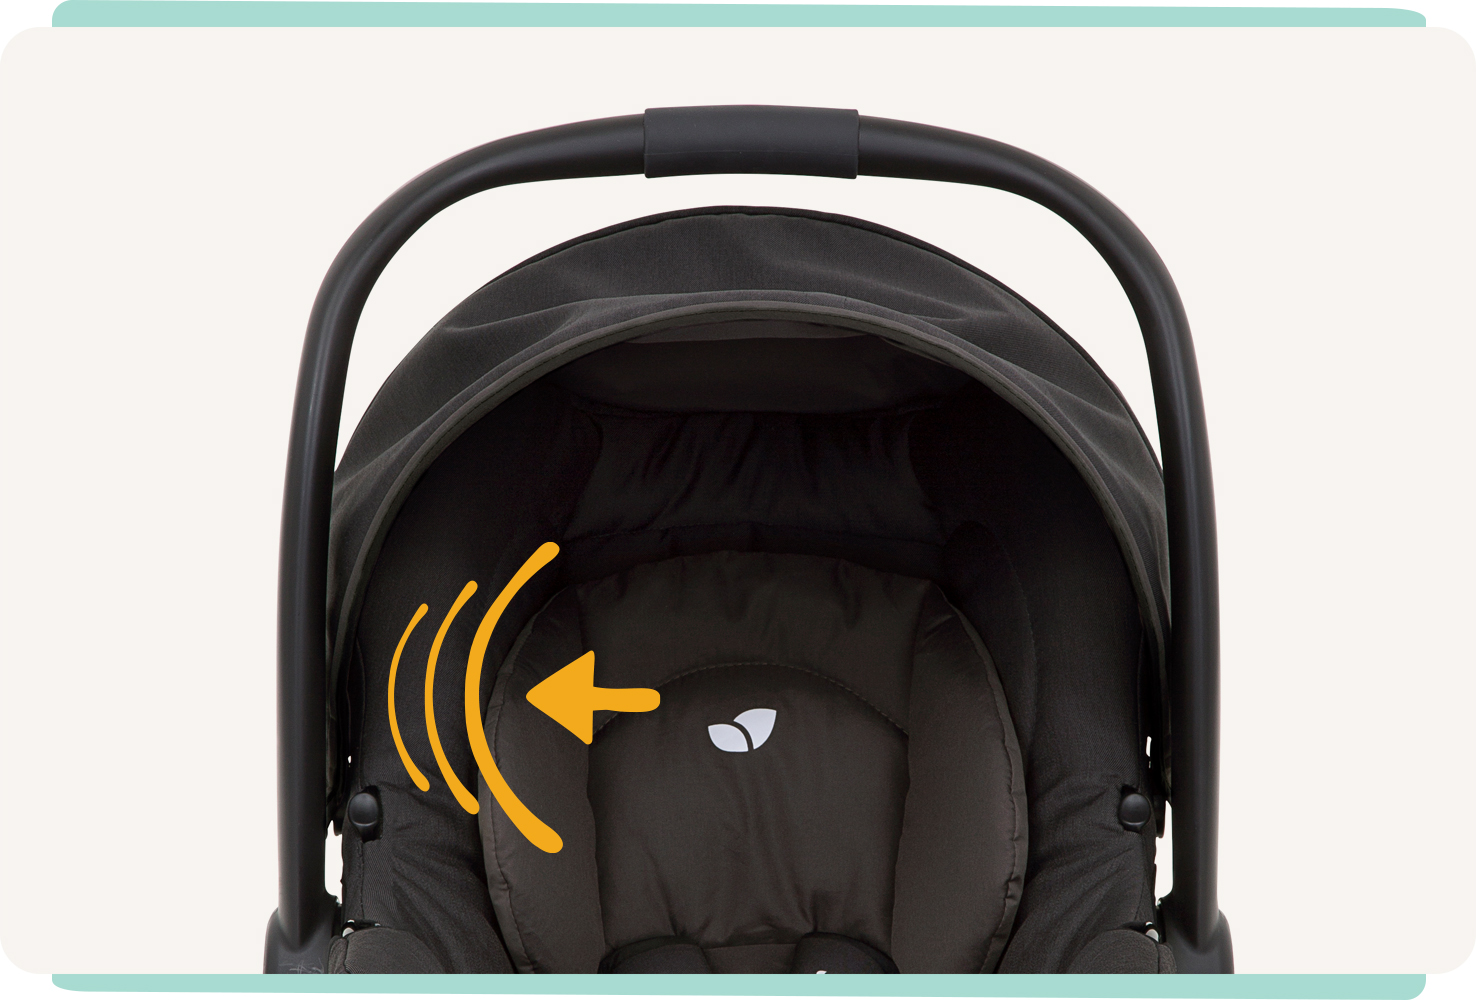 Vue de face du siège auto pour bébé Joie gemm, coloris noir, avec trois lignes incurvées sur le côté et une flèche pointant vers elles pour indiquer un choc latéral.